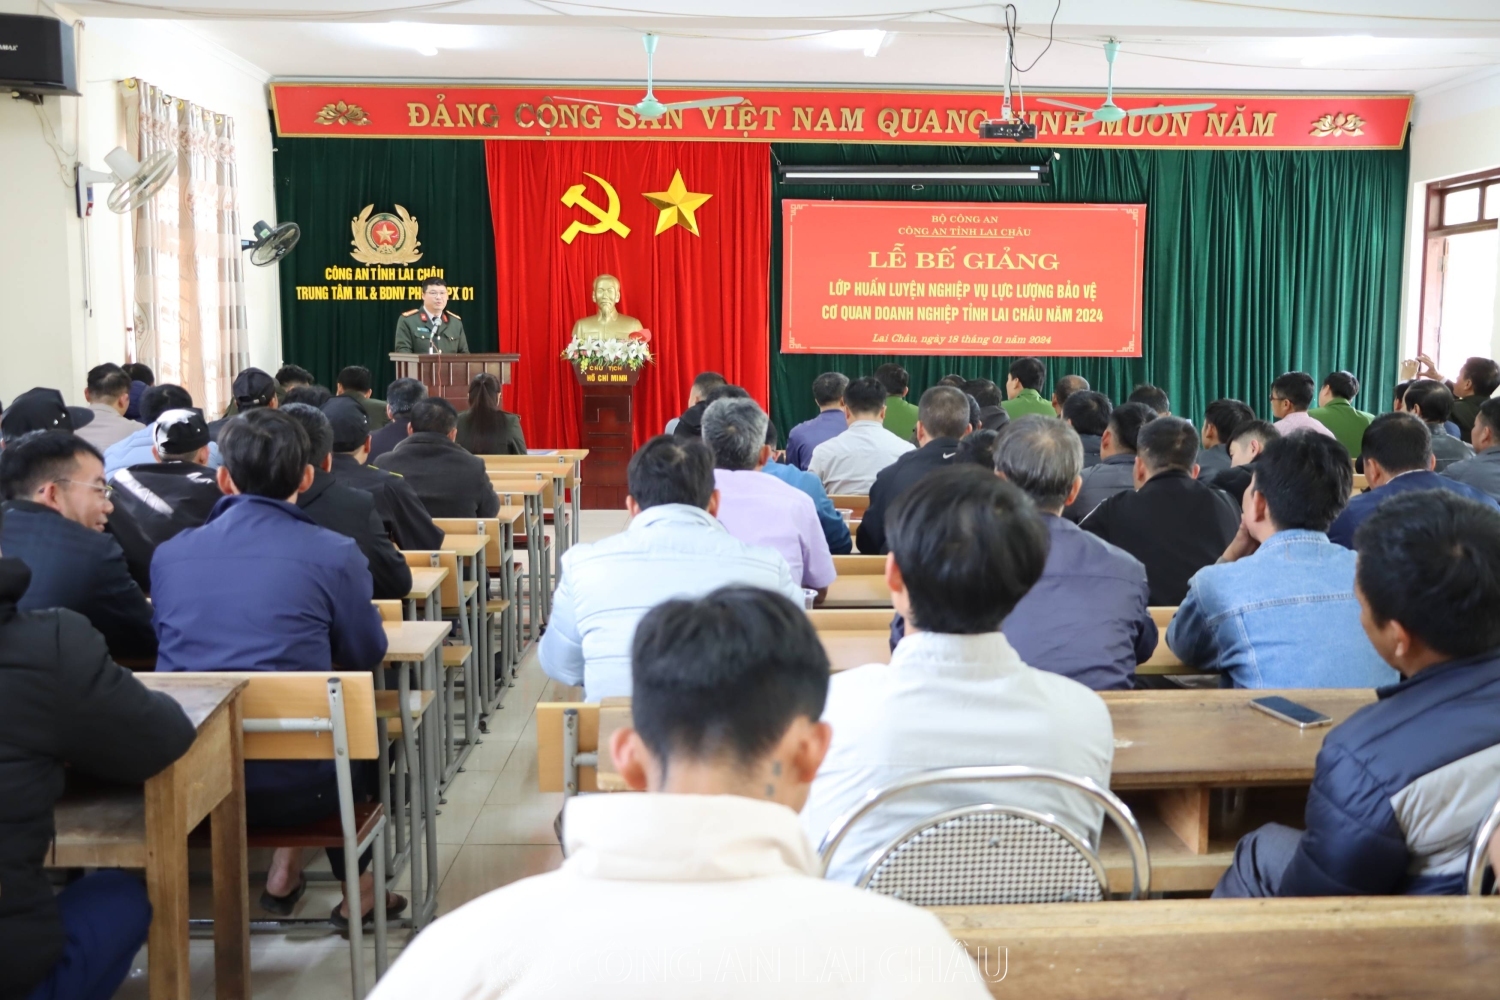 Đại tá Nguyễn Thế Diệu - Trưởng phòng An ninh kinh tế phát biểu tại lễ bế giảng